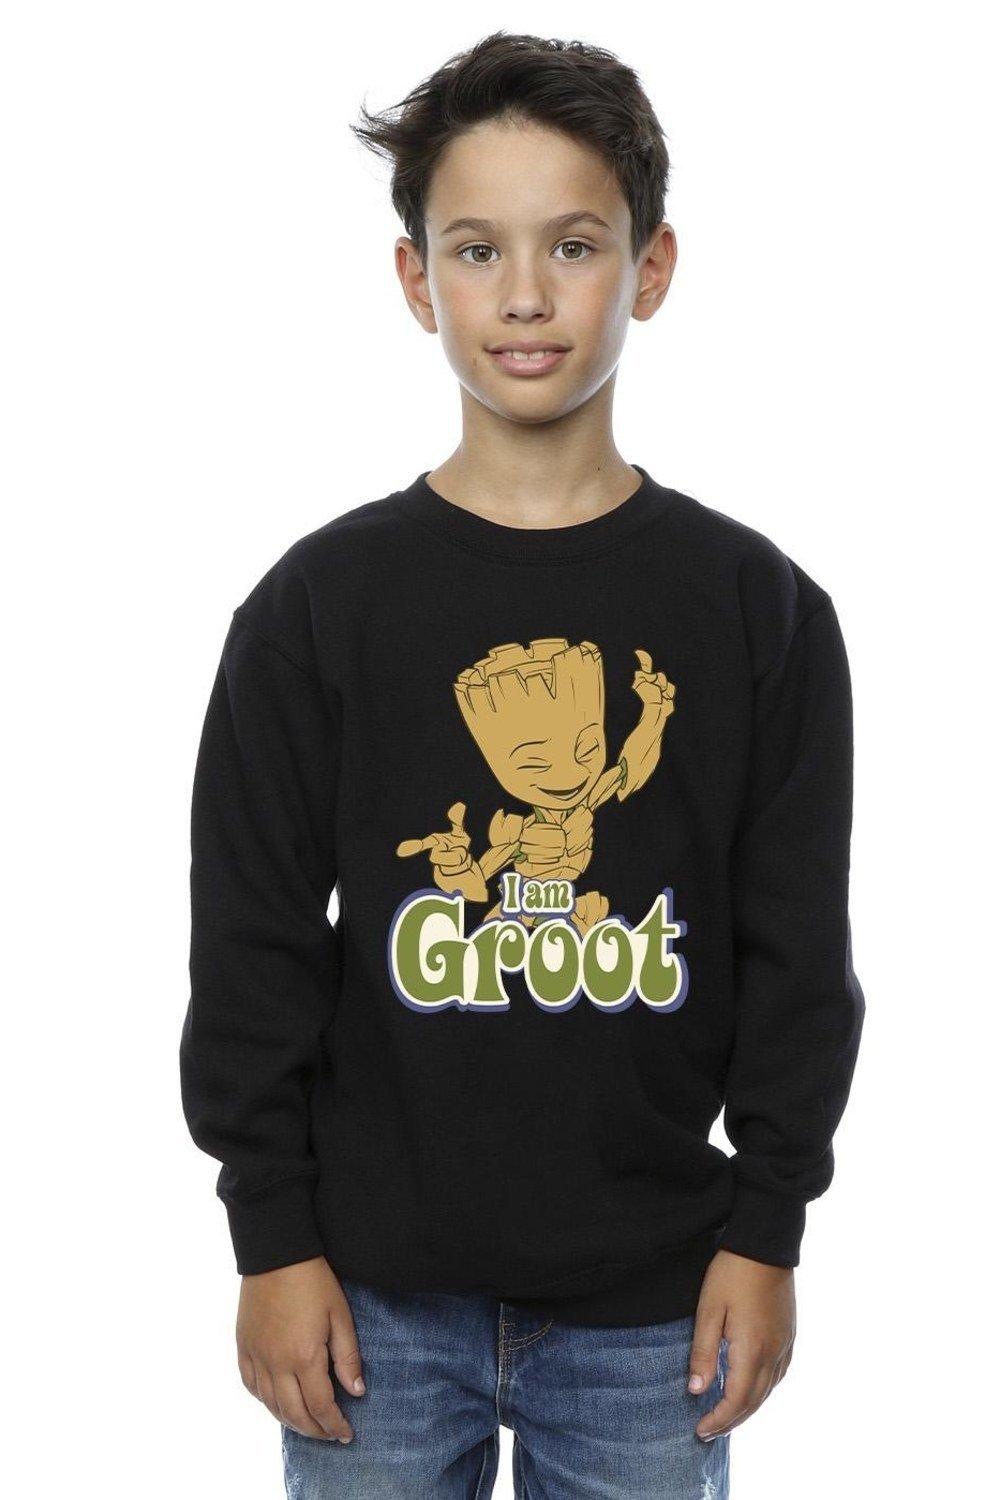 Groot Dancing Sweatshirt